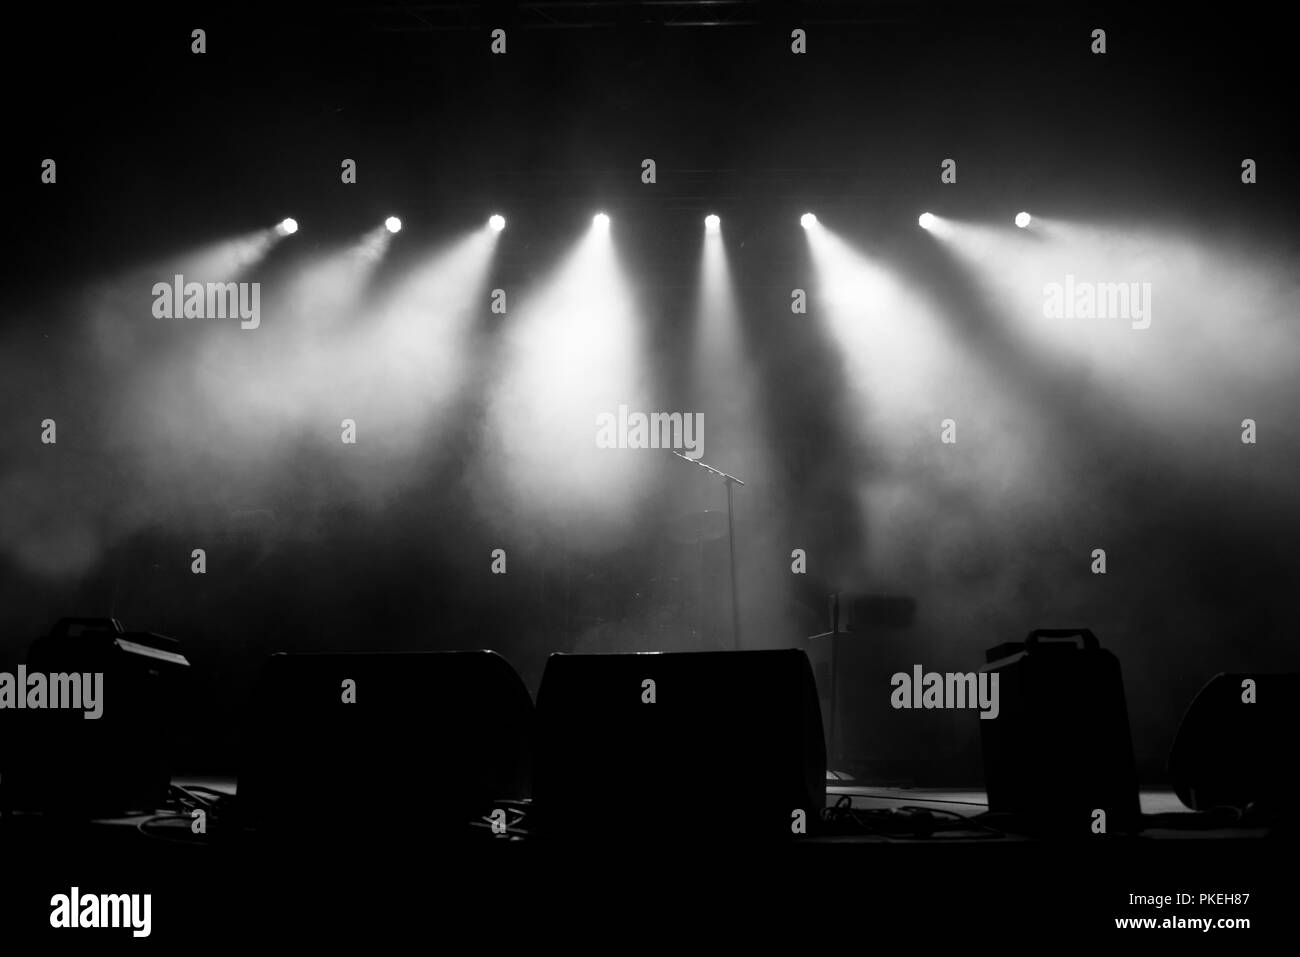 Le luci dello stadio. Immagine in bianco e nero in concerto Foto Stock